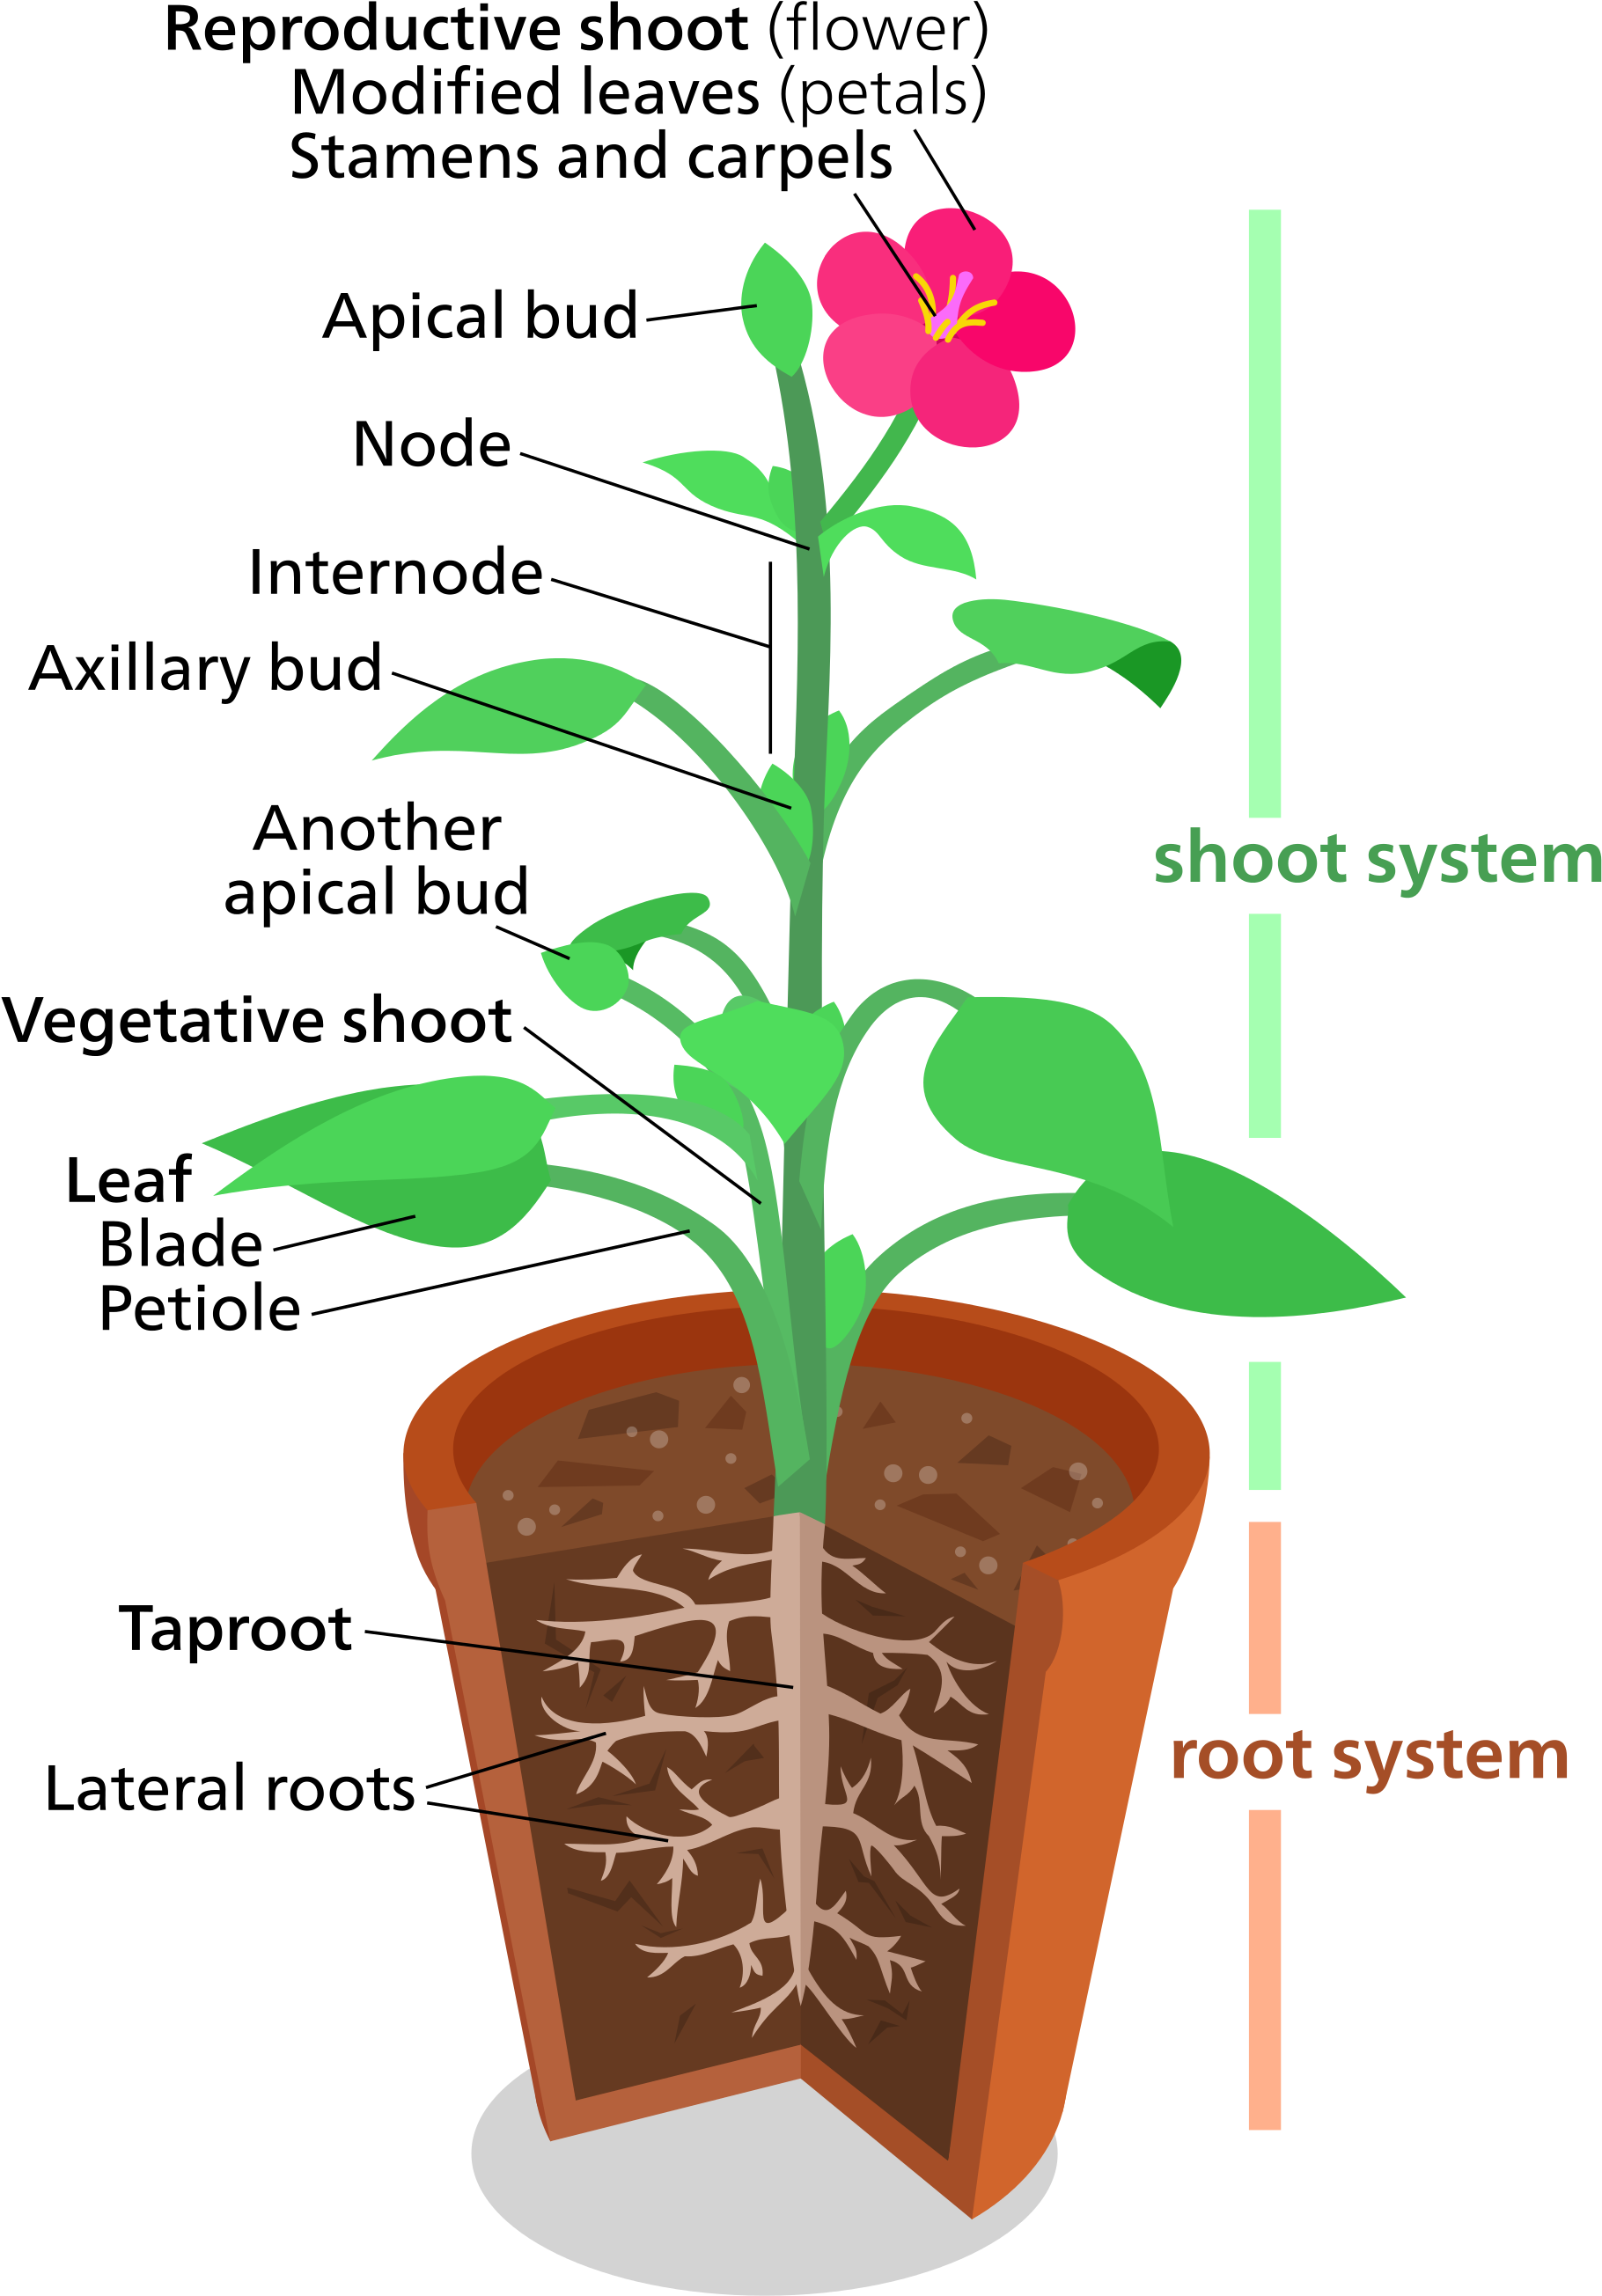 Plant structure. Корневая и побеговая система. Структура растения. Корневая и побеговая системы растений.